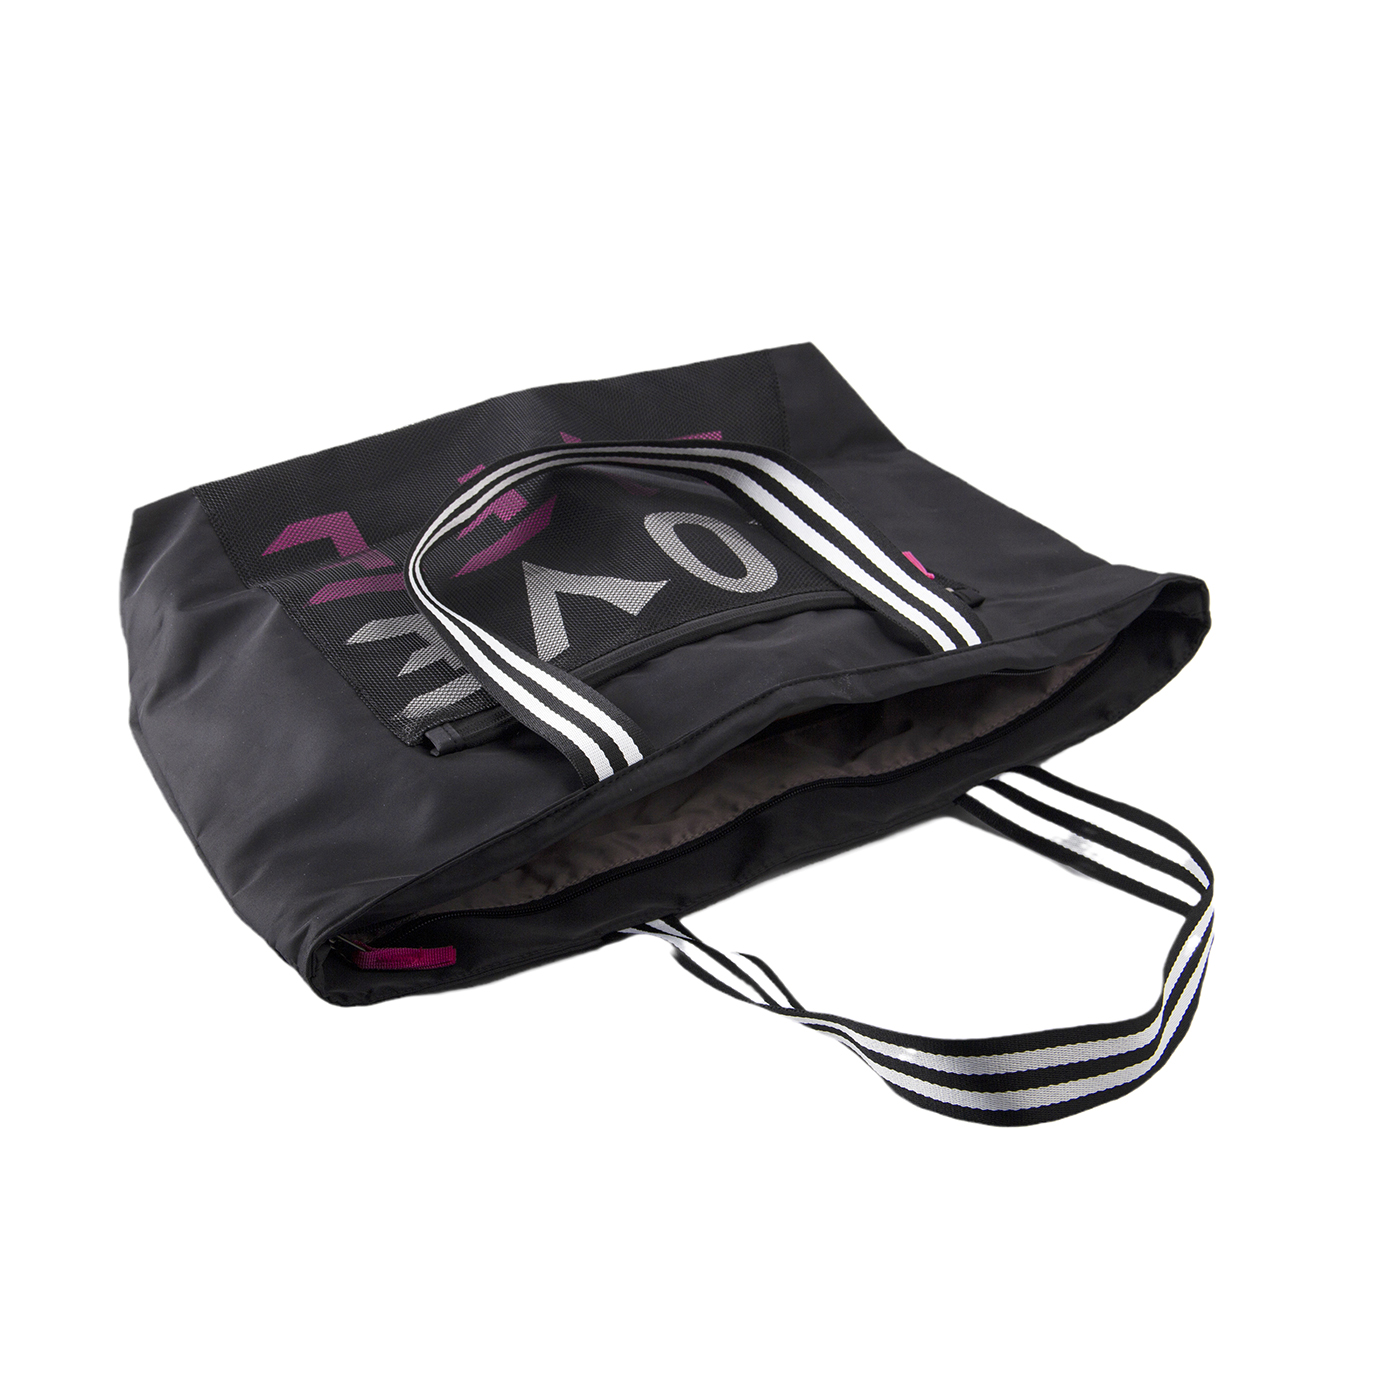 Gym Oxford Tote Bag With Big Waterproof Pocket2